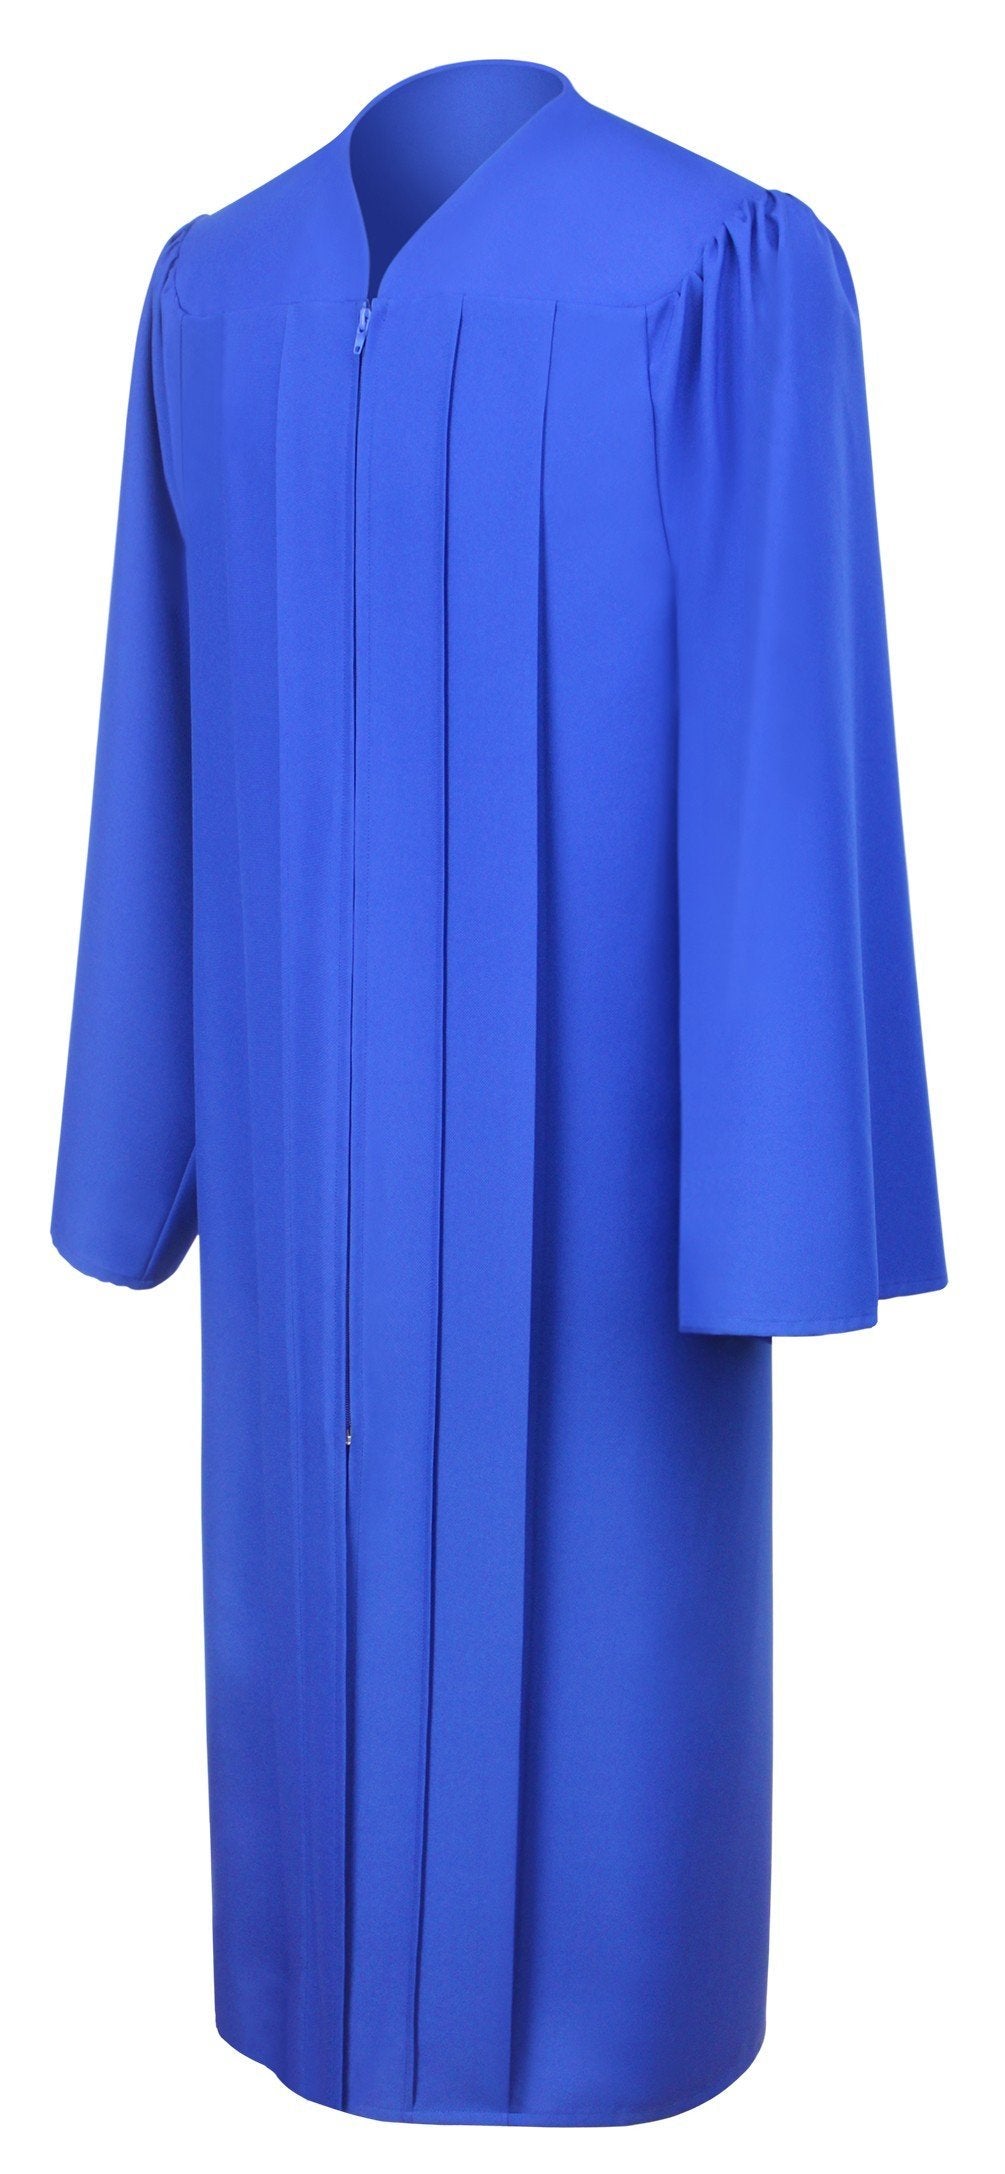 Matte Royal Blue Choir Robe - Church Choir Robes - ChoirBuy